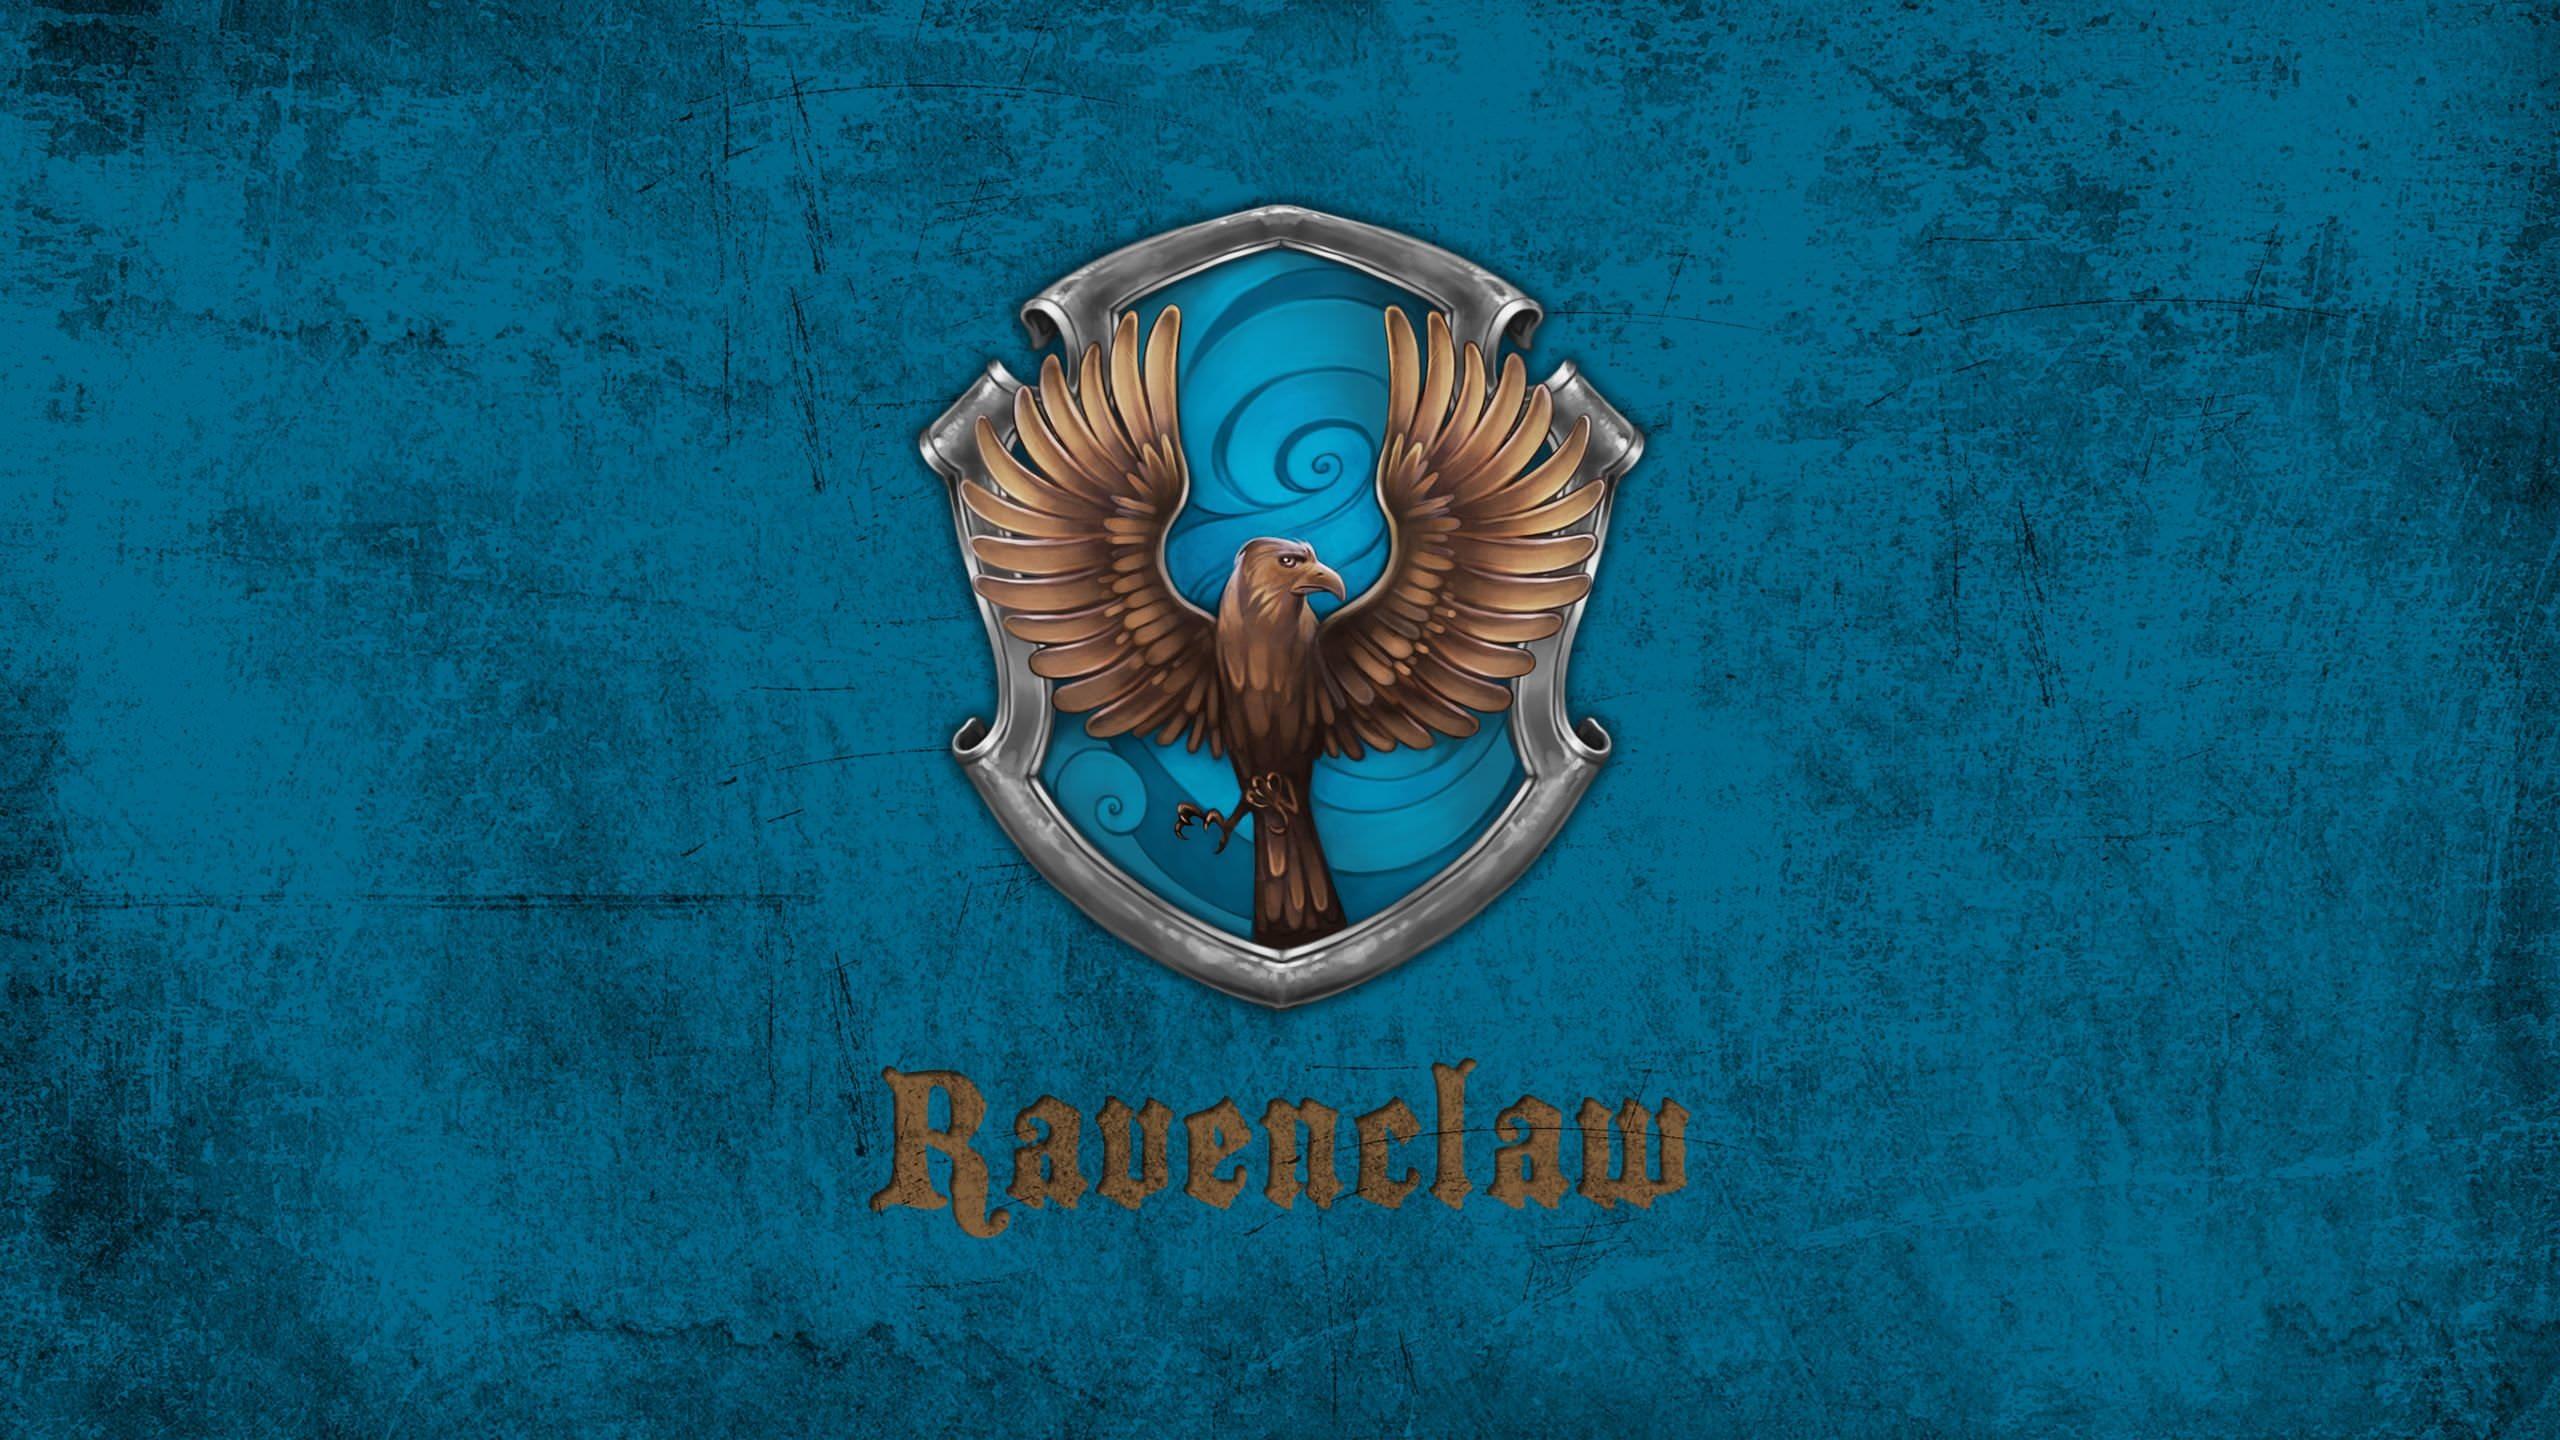 Ravenclaw wallpaper HD for desktop background